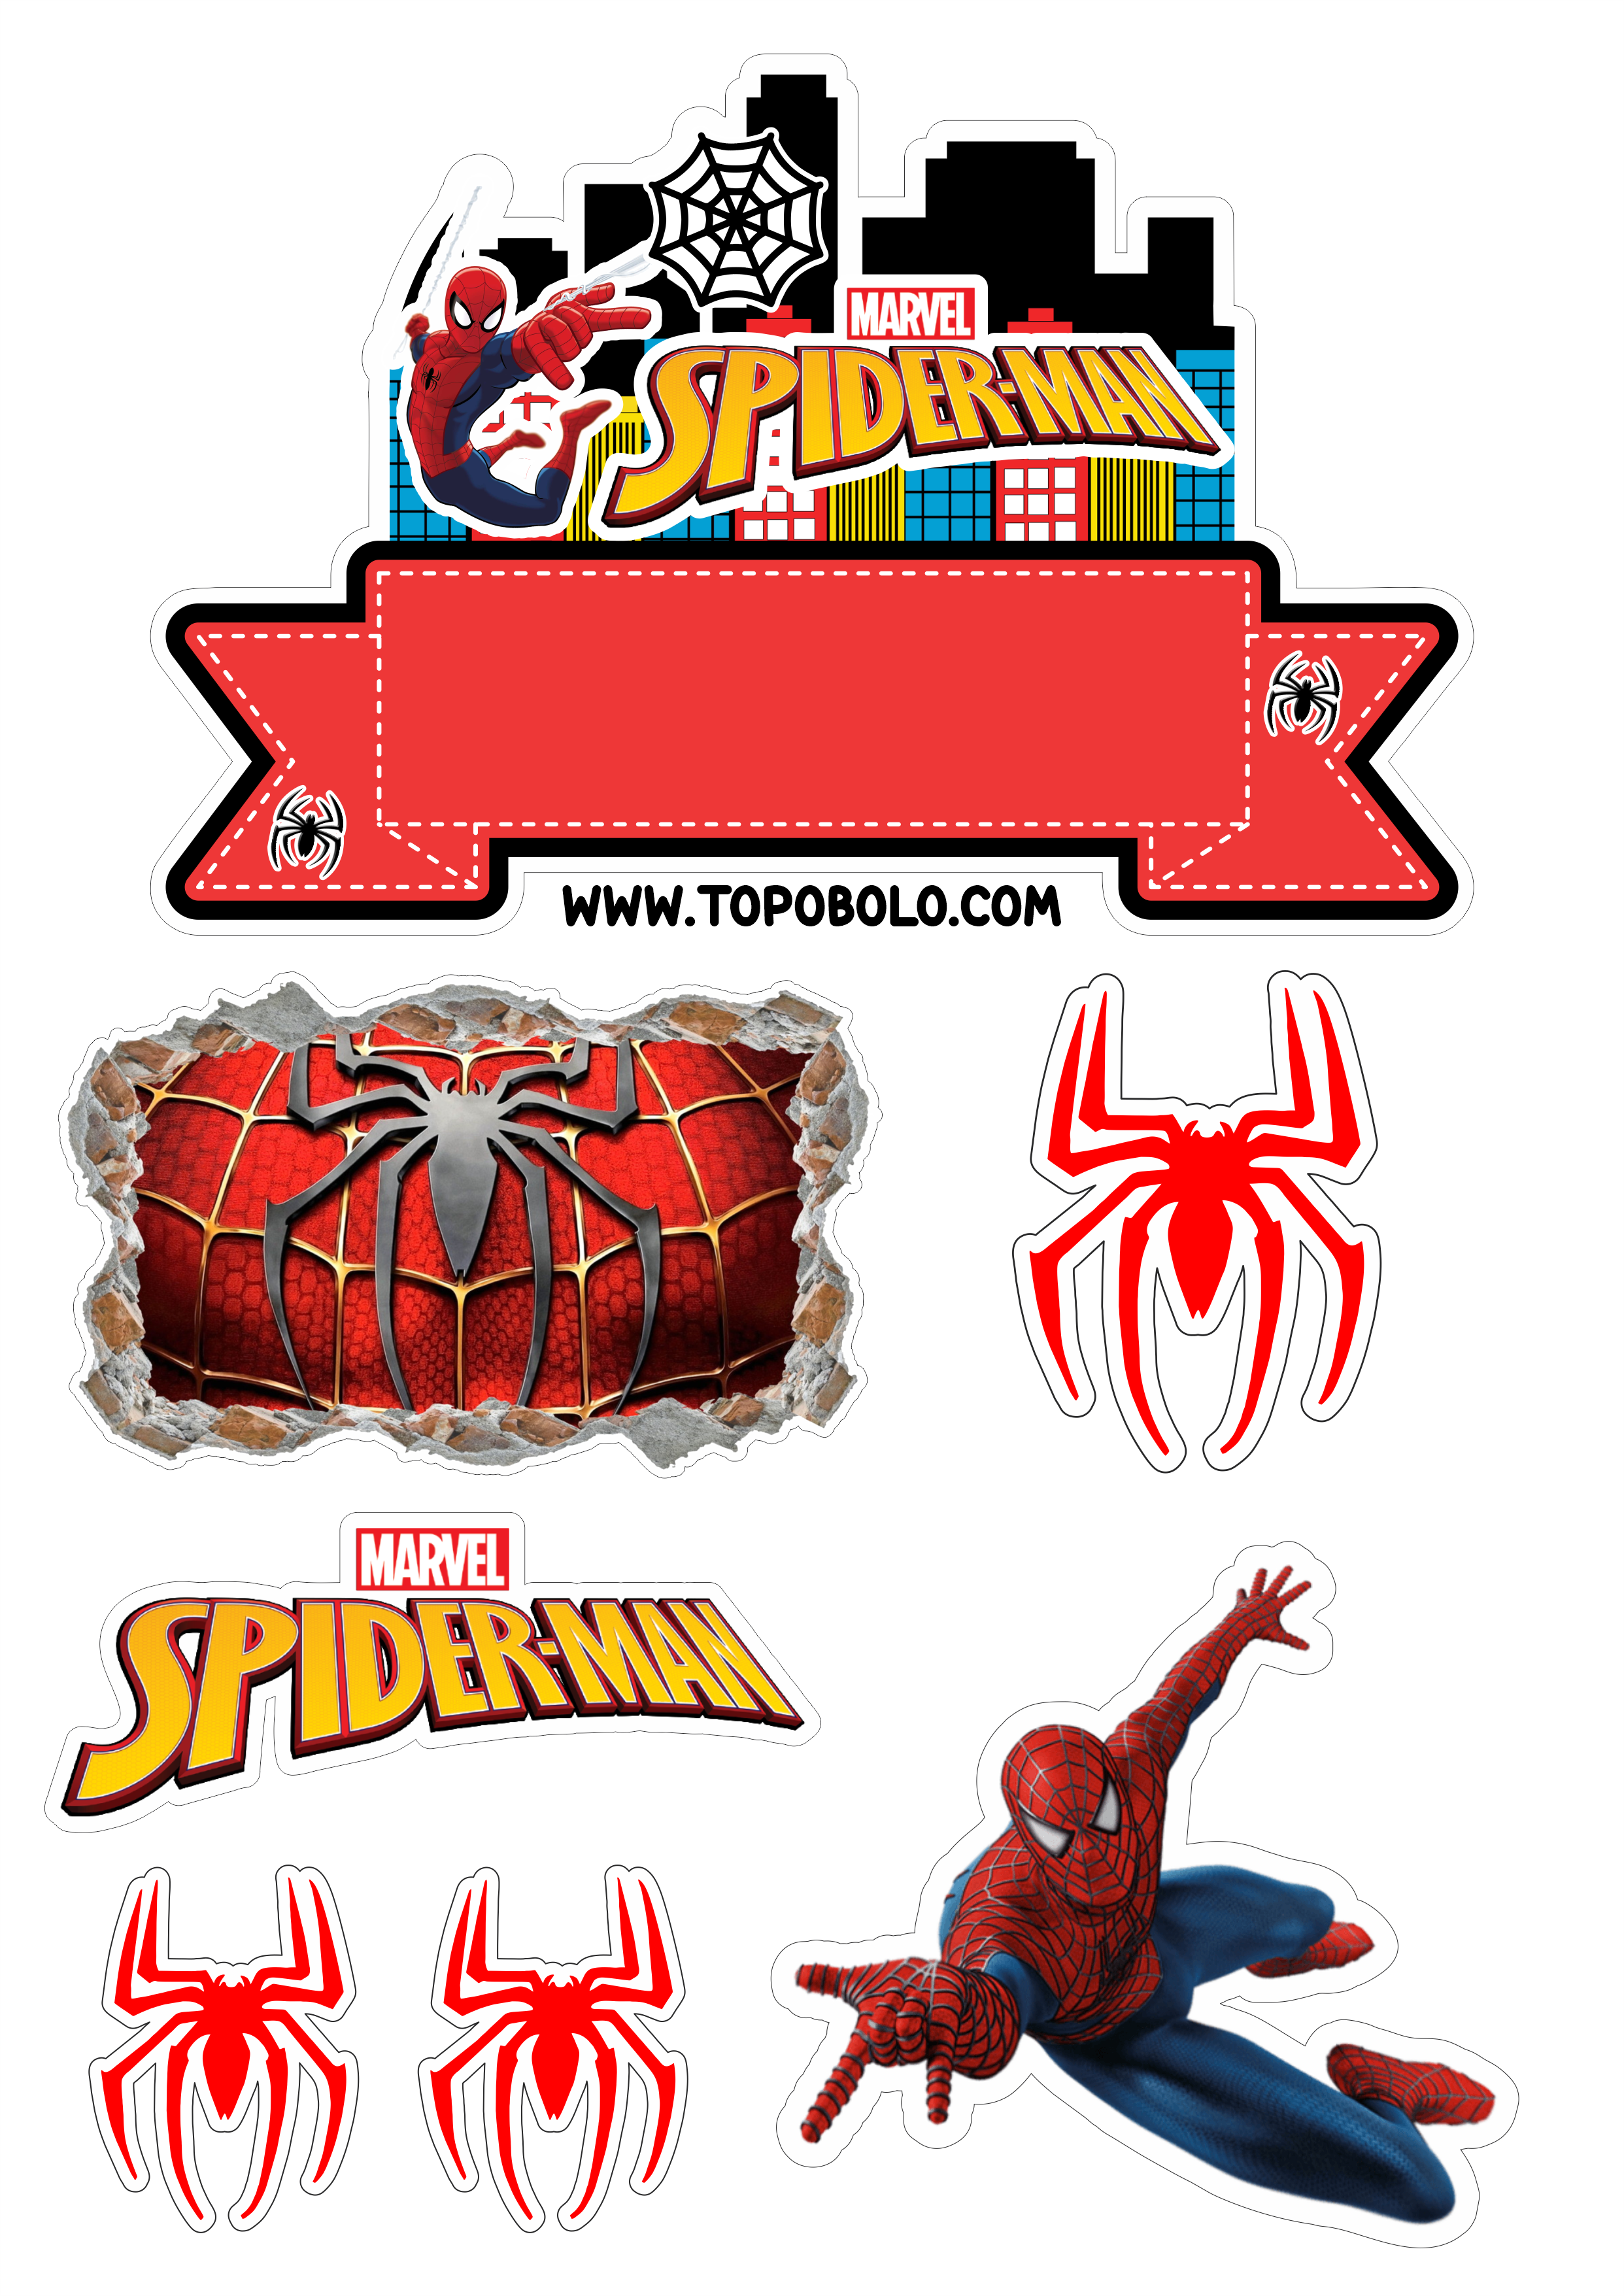 Topo de bolo para imprimir Homem-Aranha aniversário infantil Spider-Man renda extra com personalizados Super-herói png